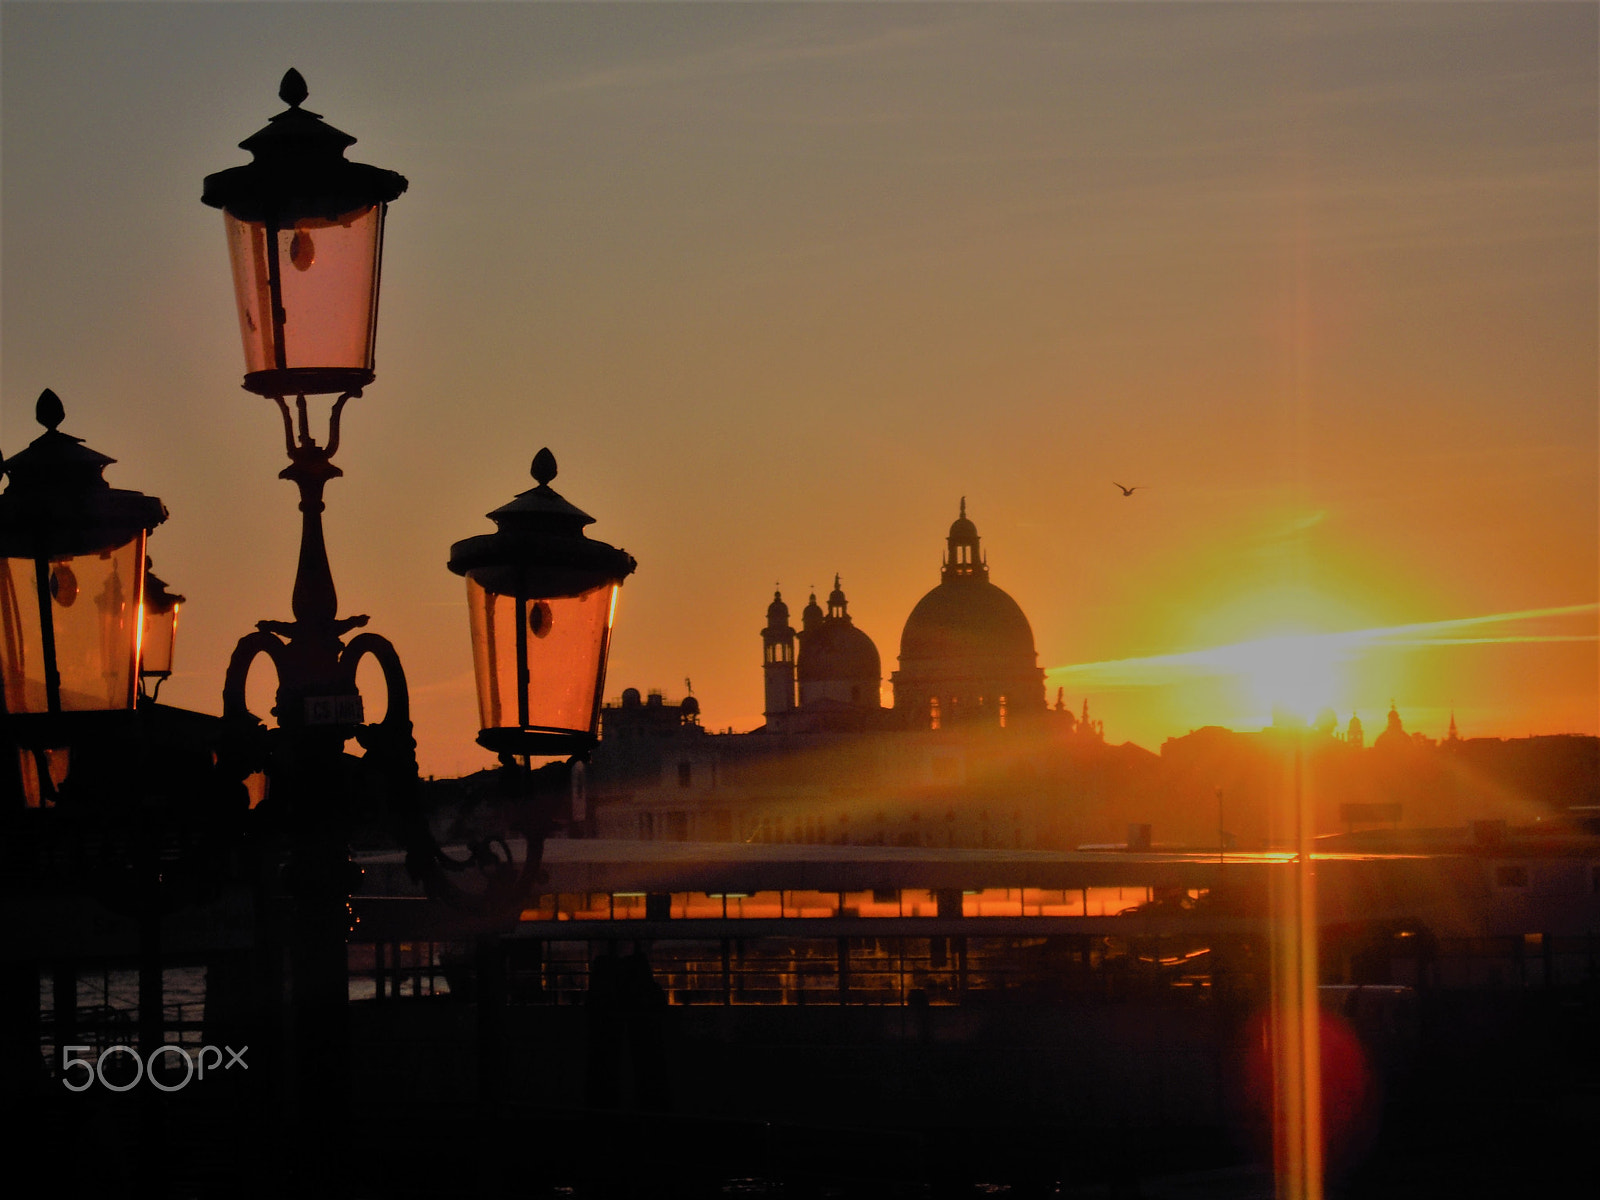 Nikon Coolpix S620 sample photo. Venice sunset photography